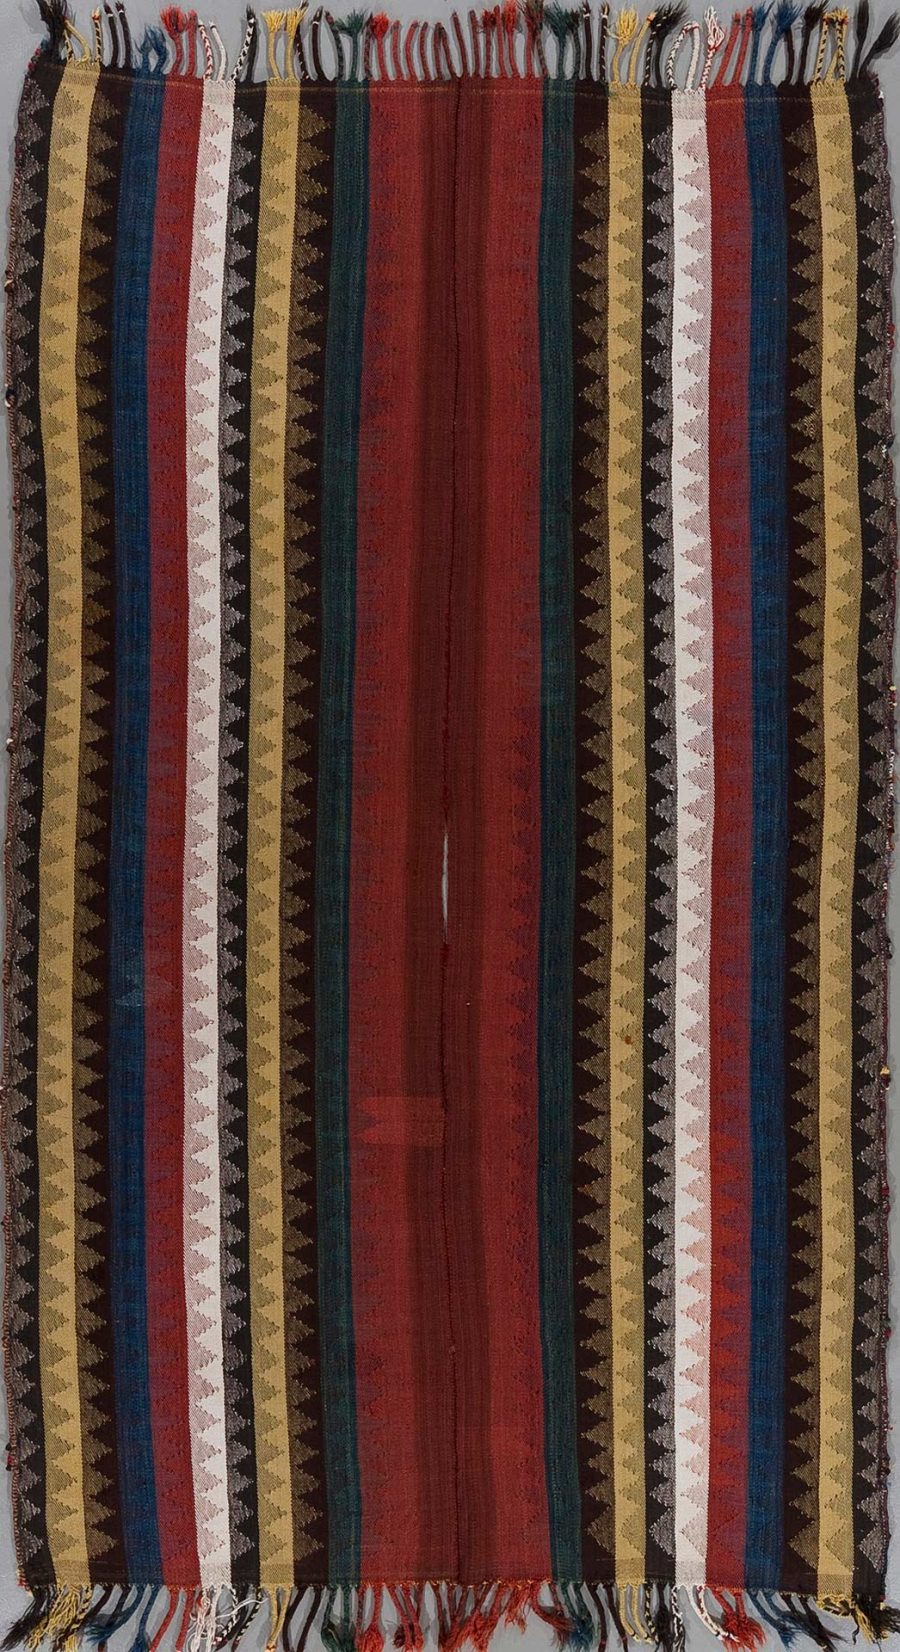 Traditioneller gewebter Textilvorhang mit vertikalen Streifenmuster in diversen Farben wie Rot, Blau, Braun und Creme, verziert mit Zacken- und Rautenmustern, und Fransen an den Enden.